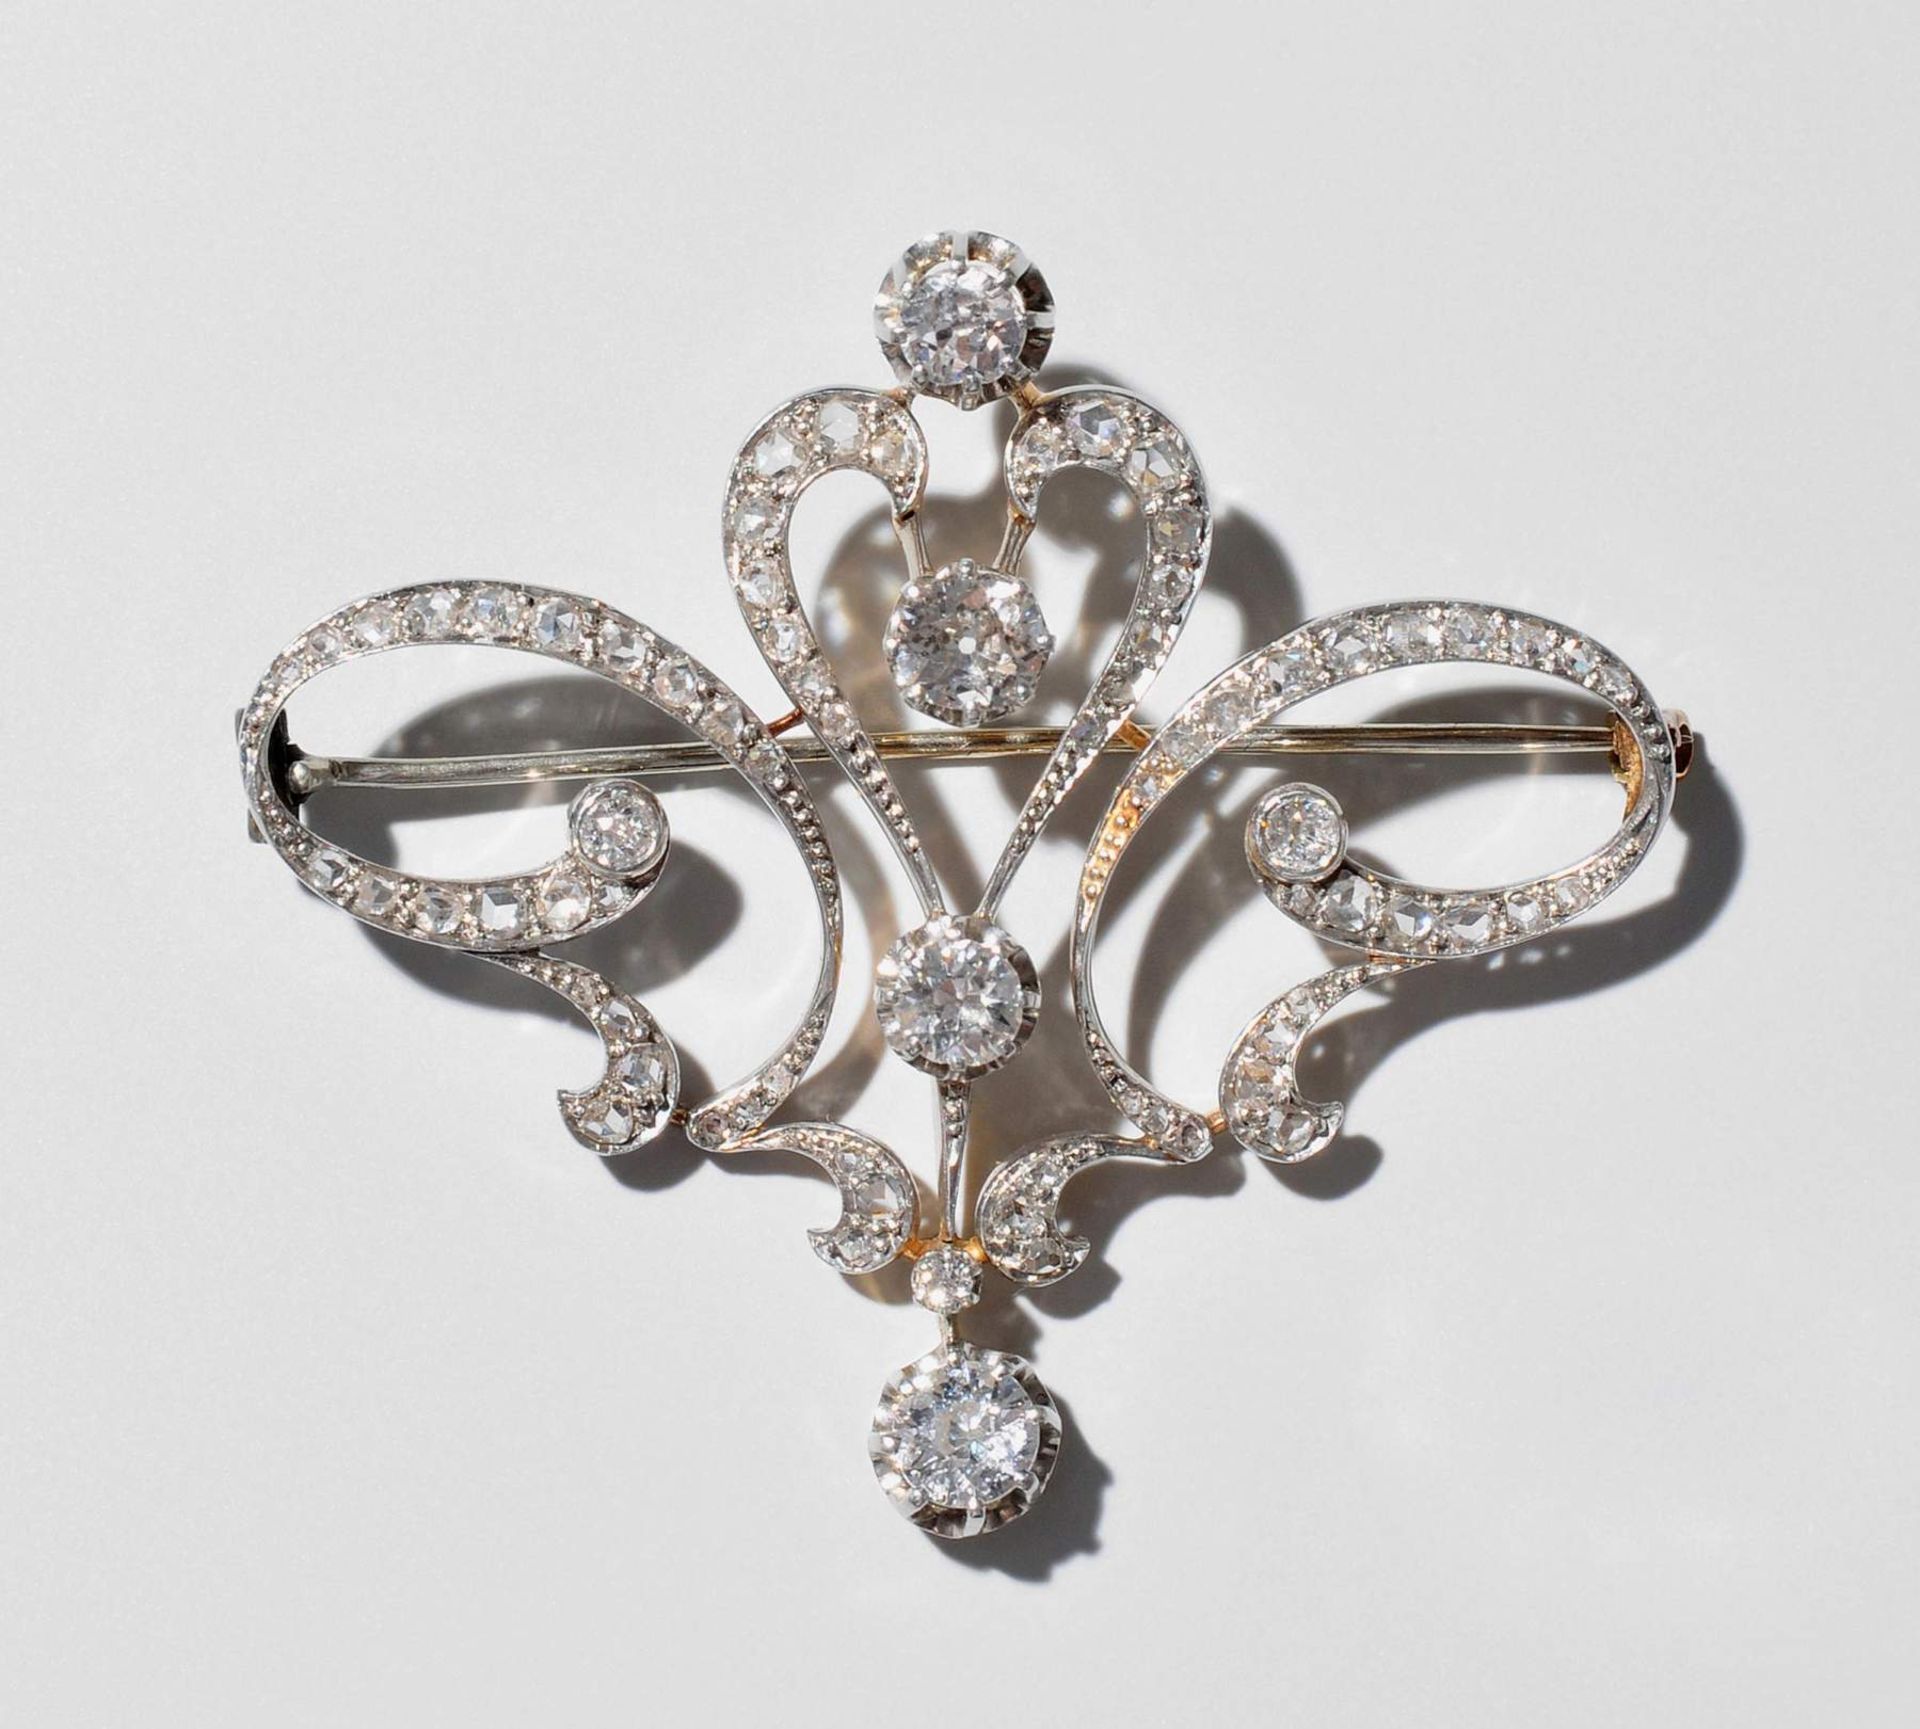 Diamant-Brosche
Um 1900. Platin/750 Gelbgold. Feines stilisiertes Floralmotiv mit 4 grösseren